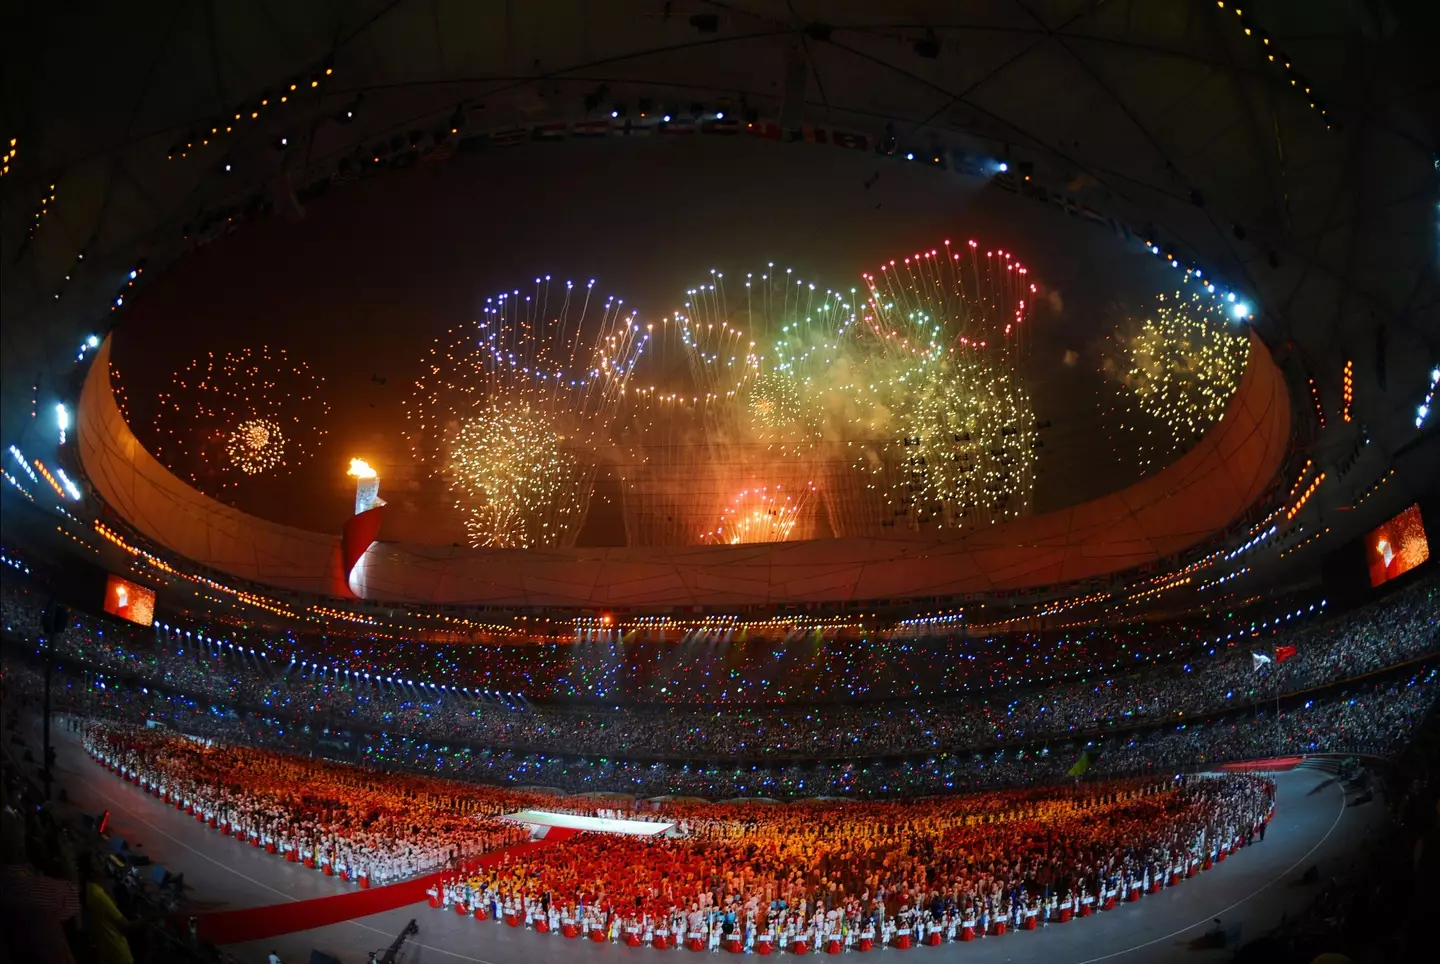 2008 Olympics opening ceremony